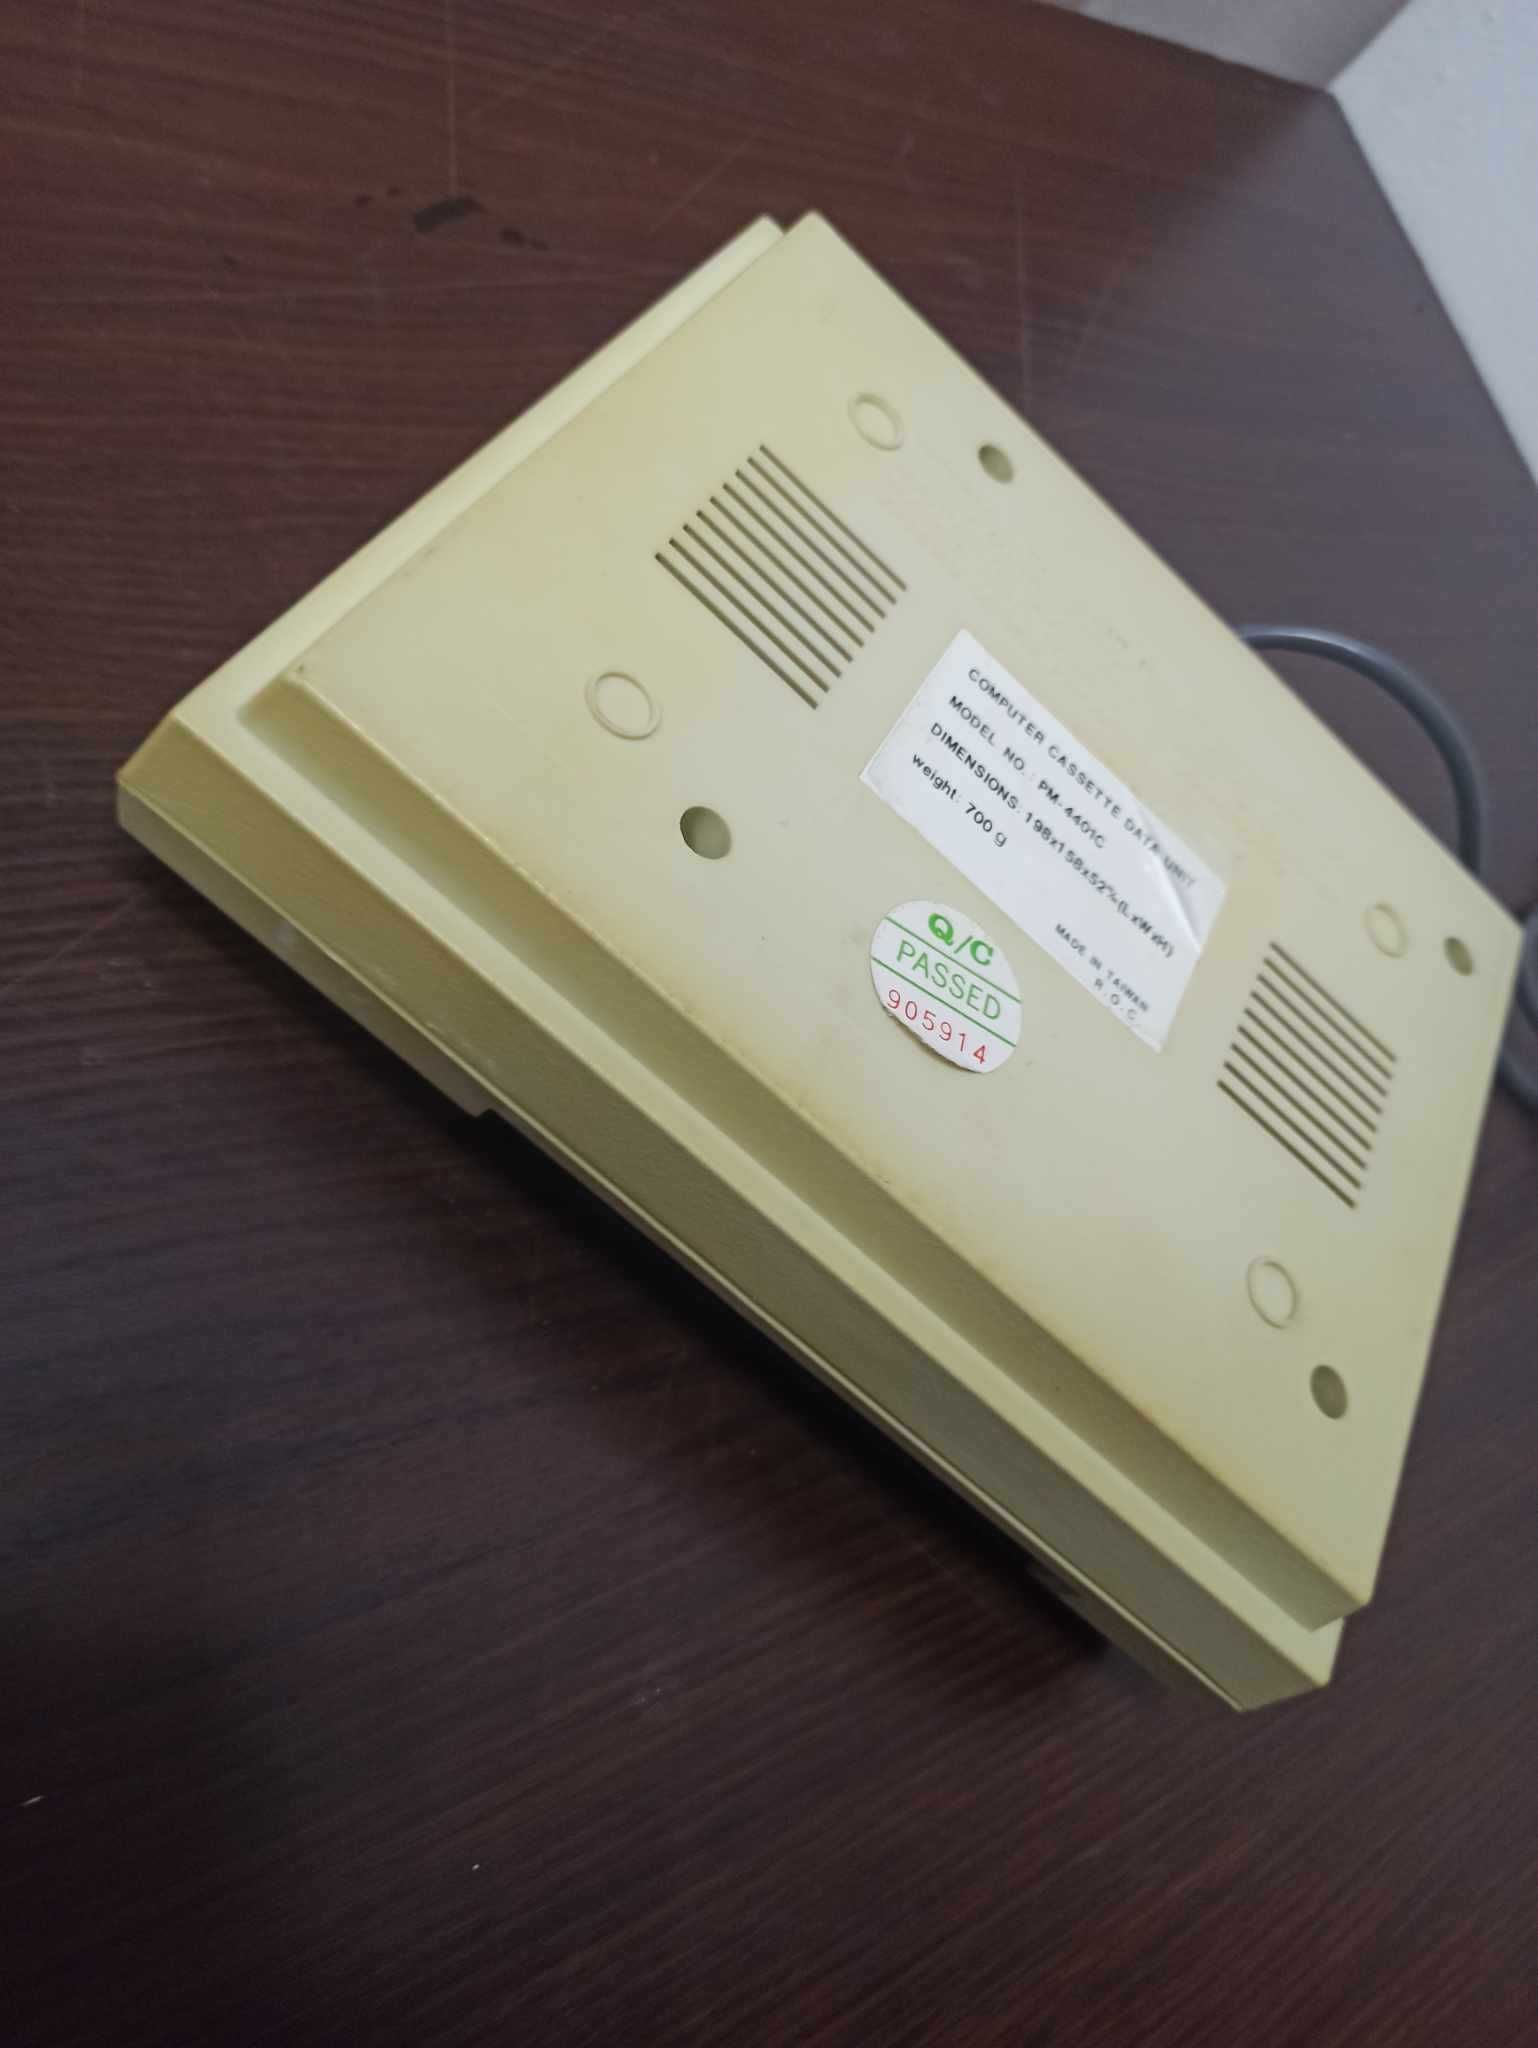 Datasette PM4401 C Commodore